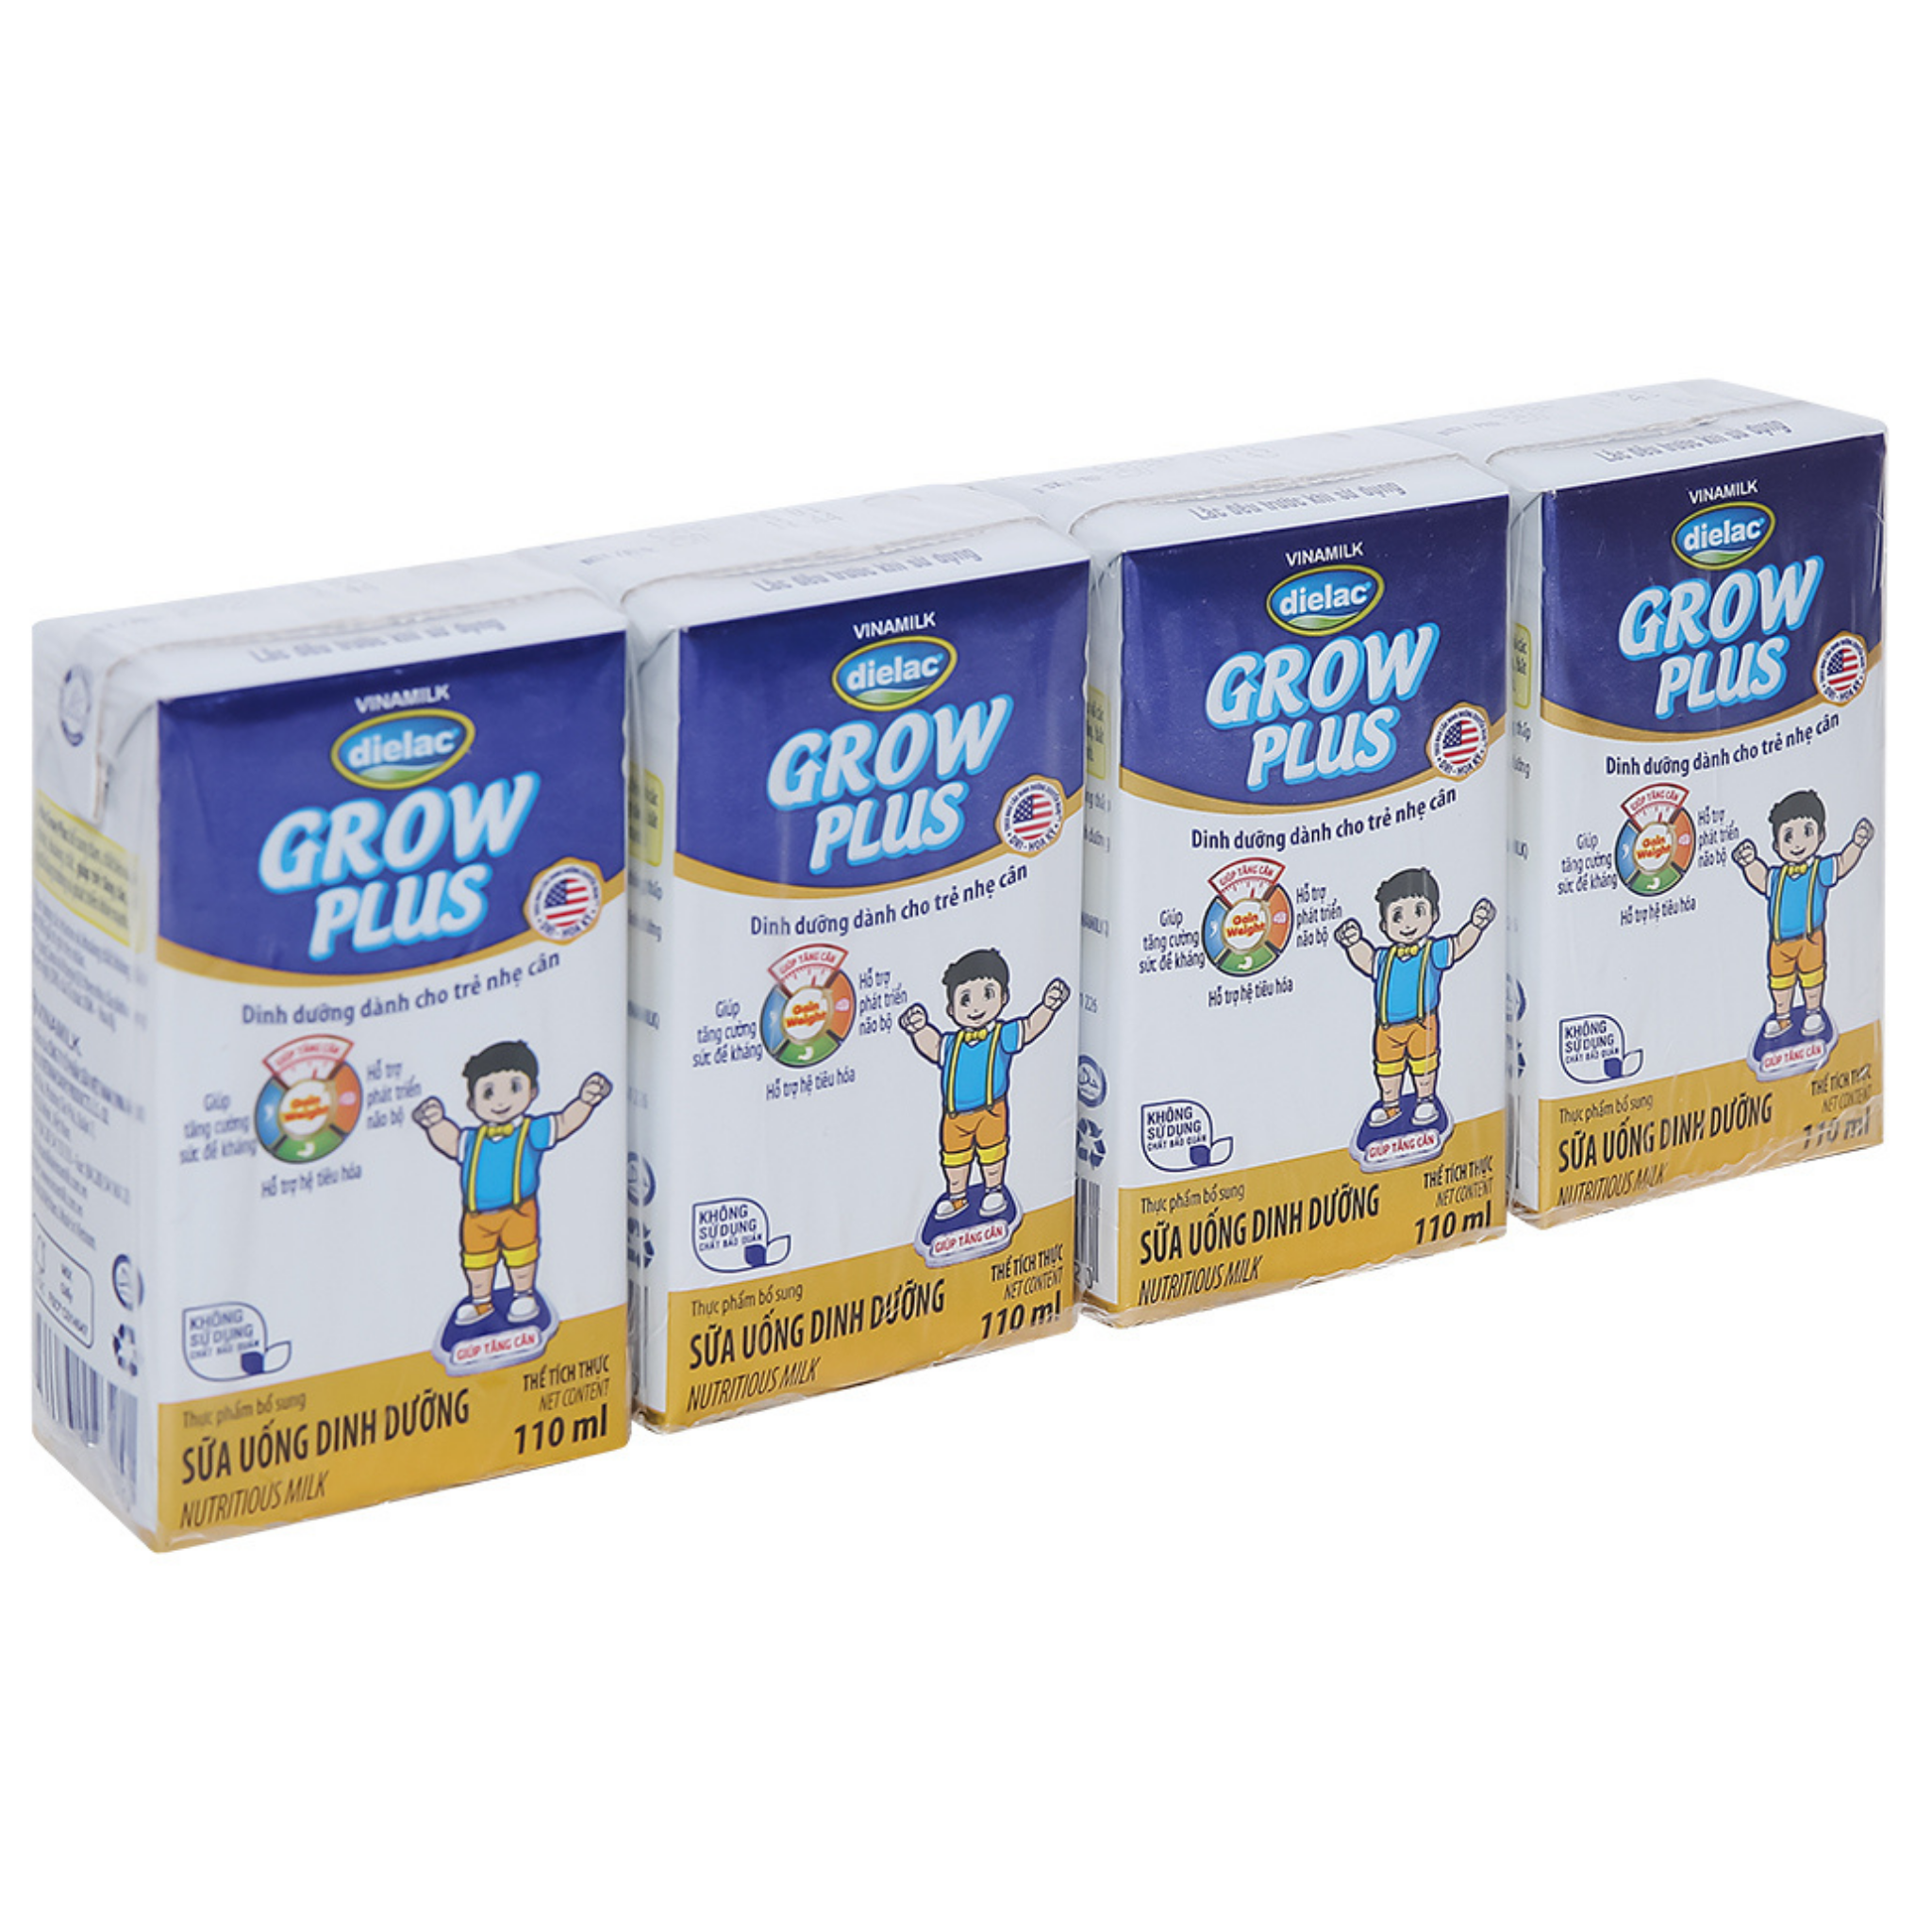  Sữa uống dinh dưỡng Dielac Grow Plus hộp 110ml (cho trẻ nhẹ cân) 